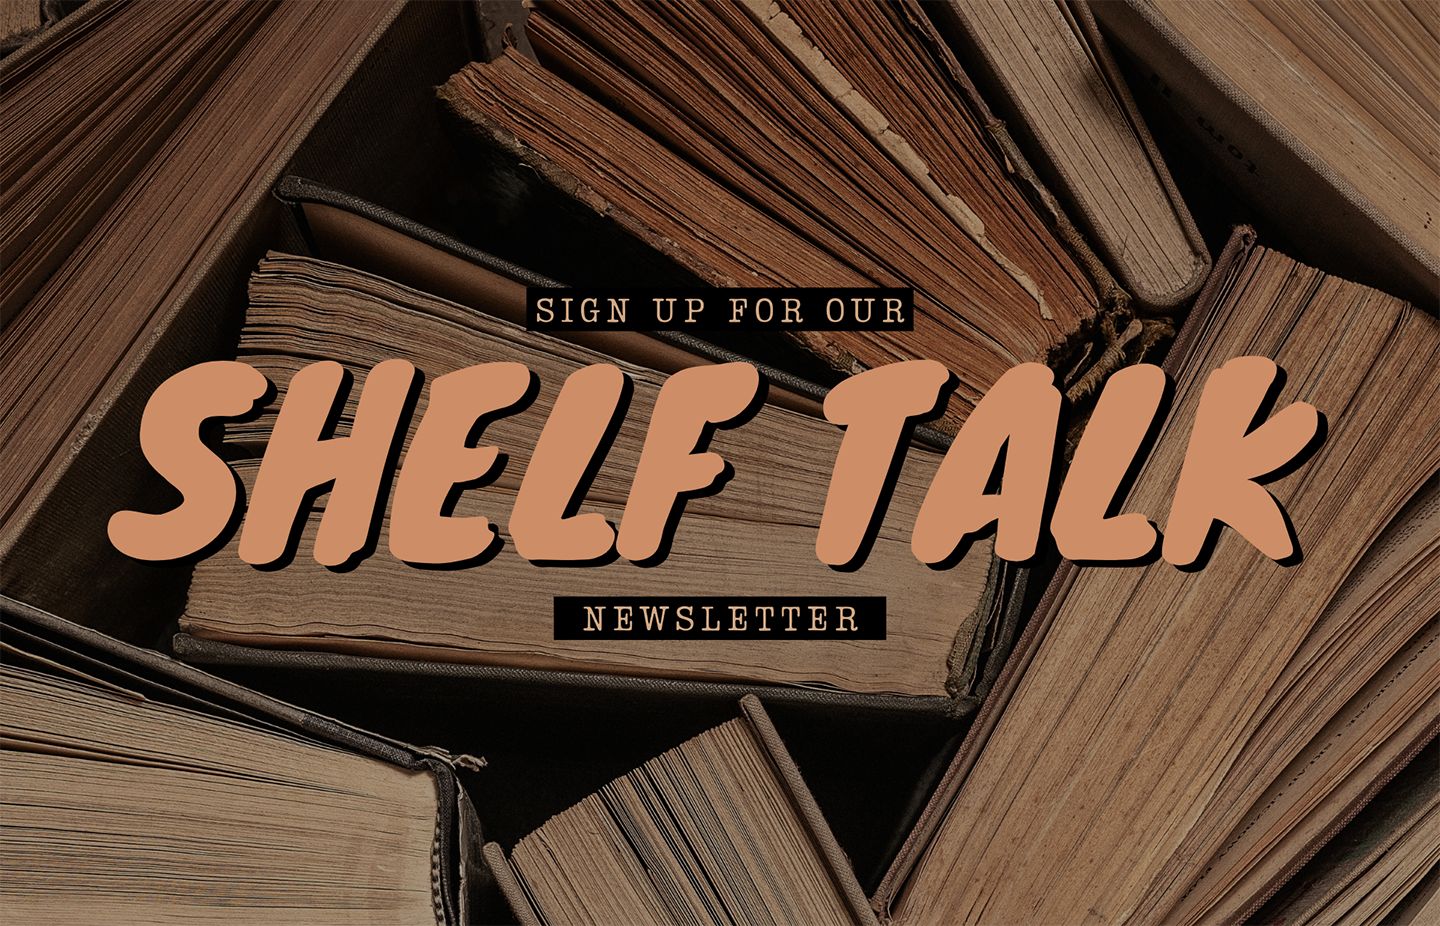 Shelf Talk Newsletter 2021